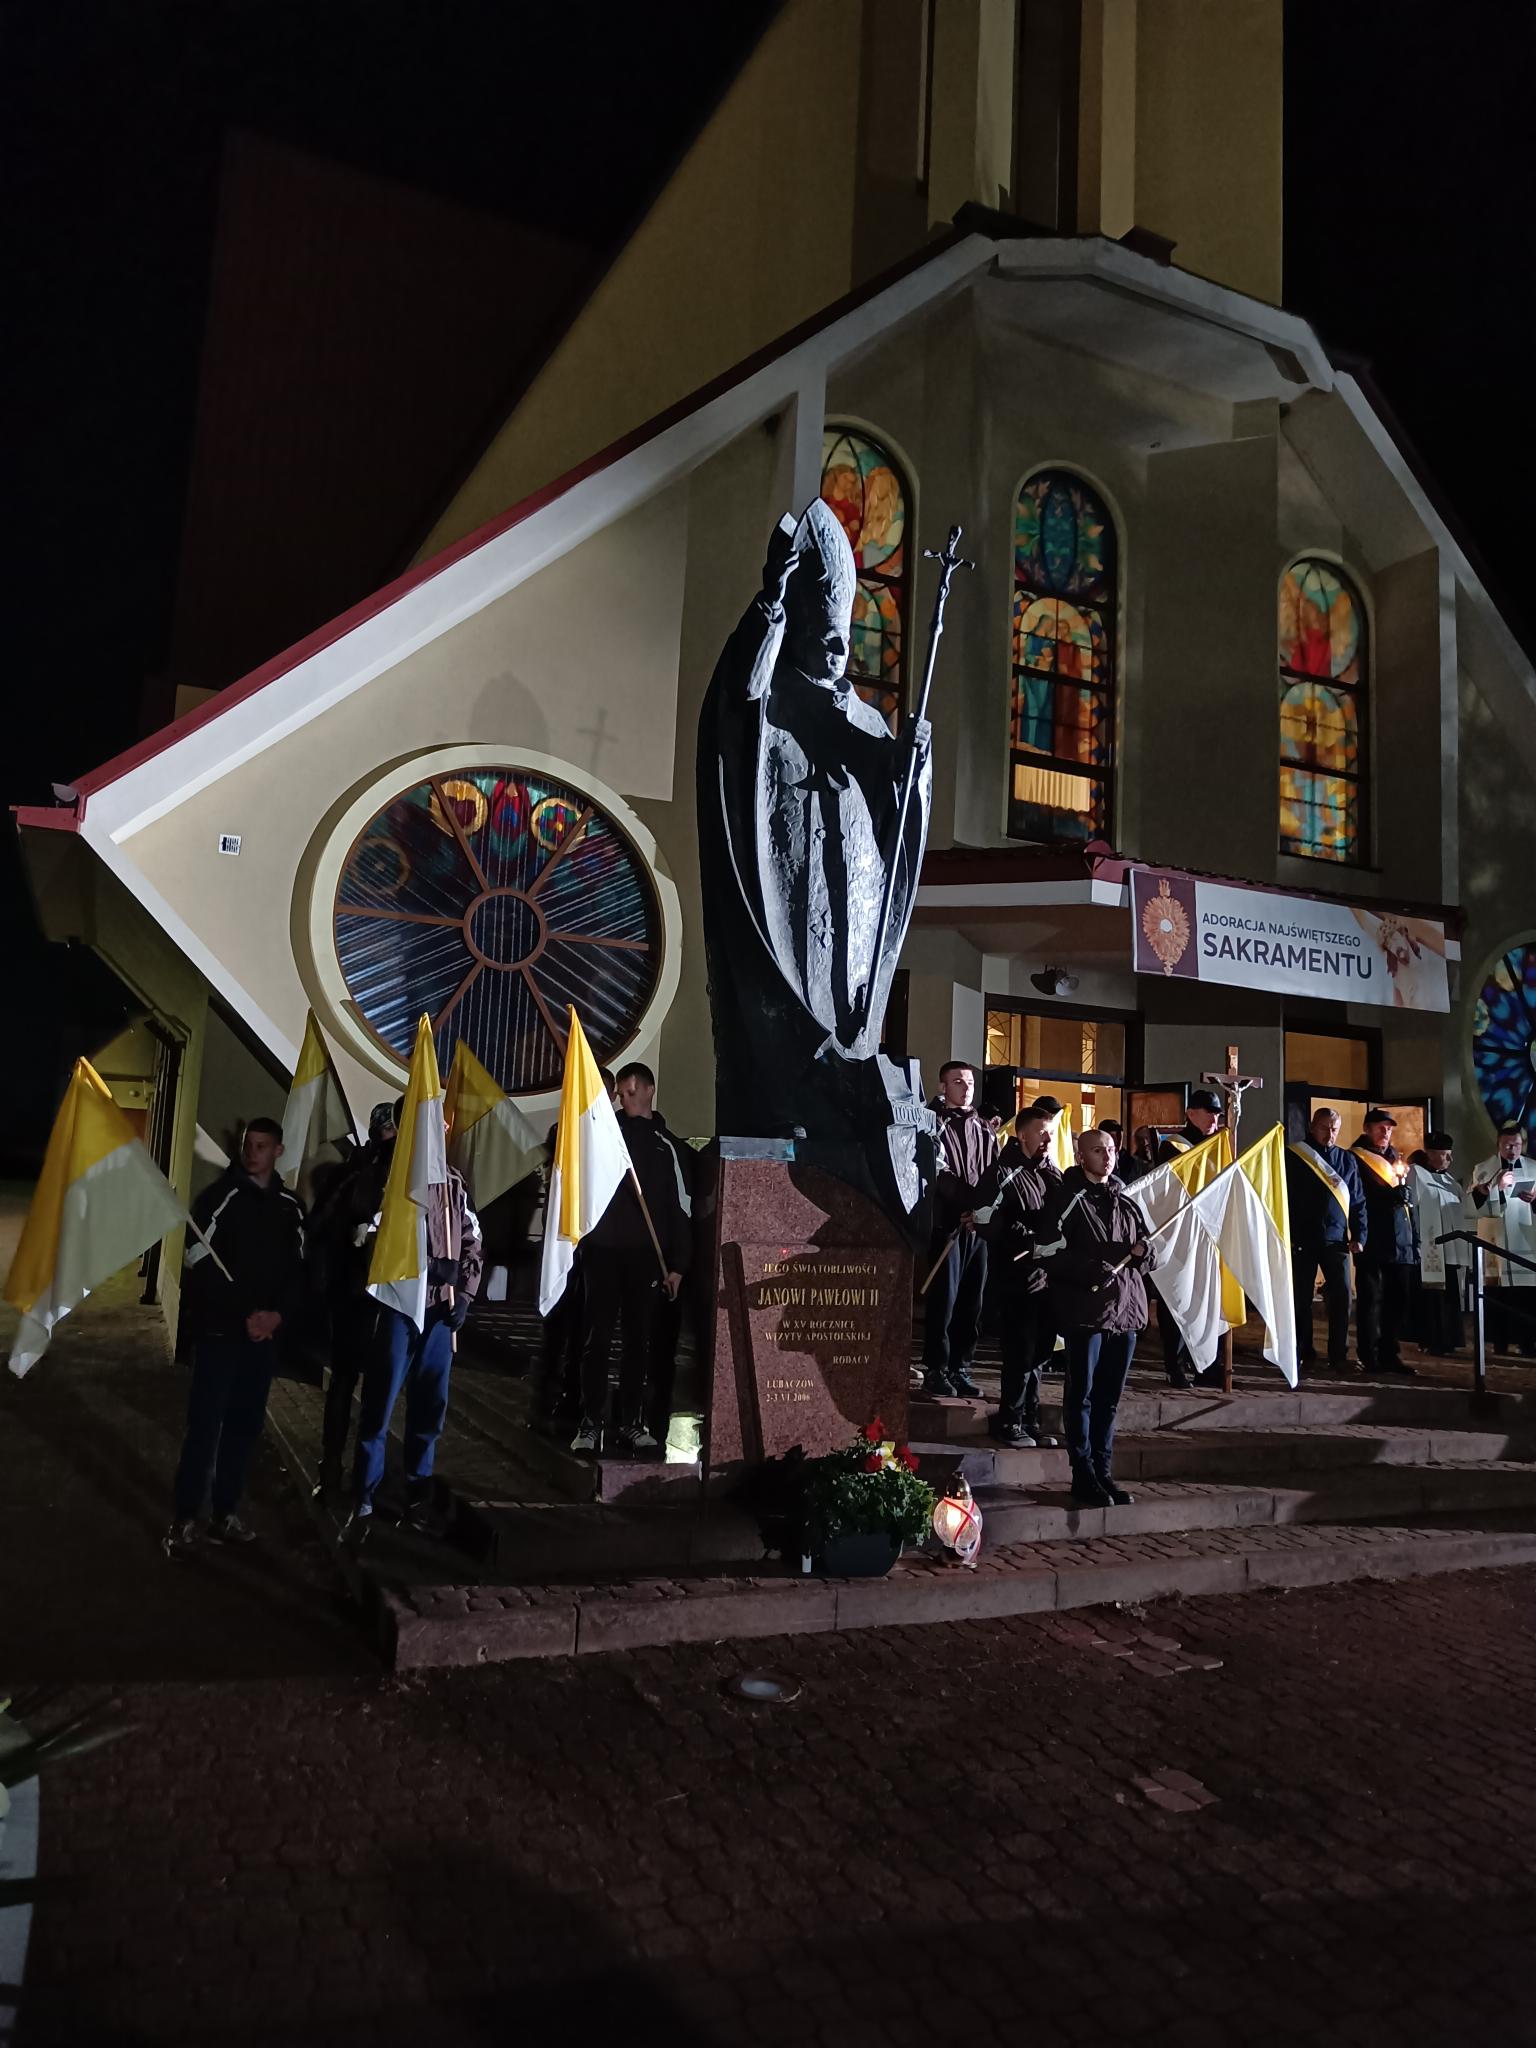 Dzień Papieski | Wychowankowie MOW trzymają wartę honorową przy pomniku Jana Pawła II. Chłopcy stoją po dwóch stronach pomnika, każdy trzyma flagę papieską. W tle fasada kościoła z witrażami. Zdjęcie zrobione nocą..jpg